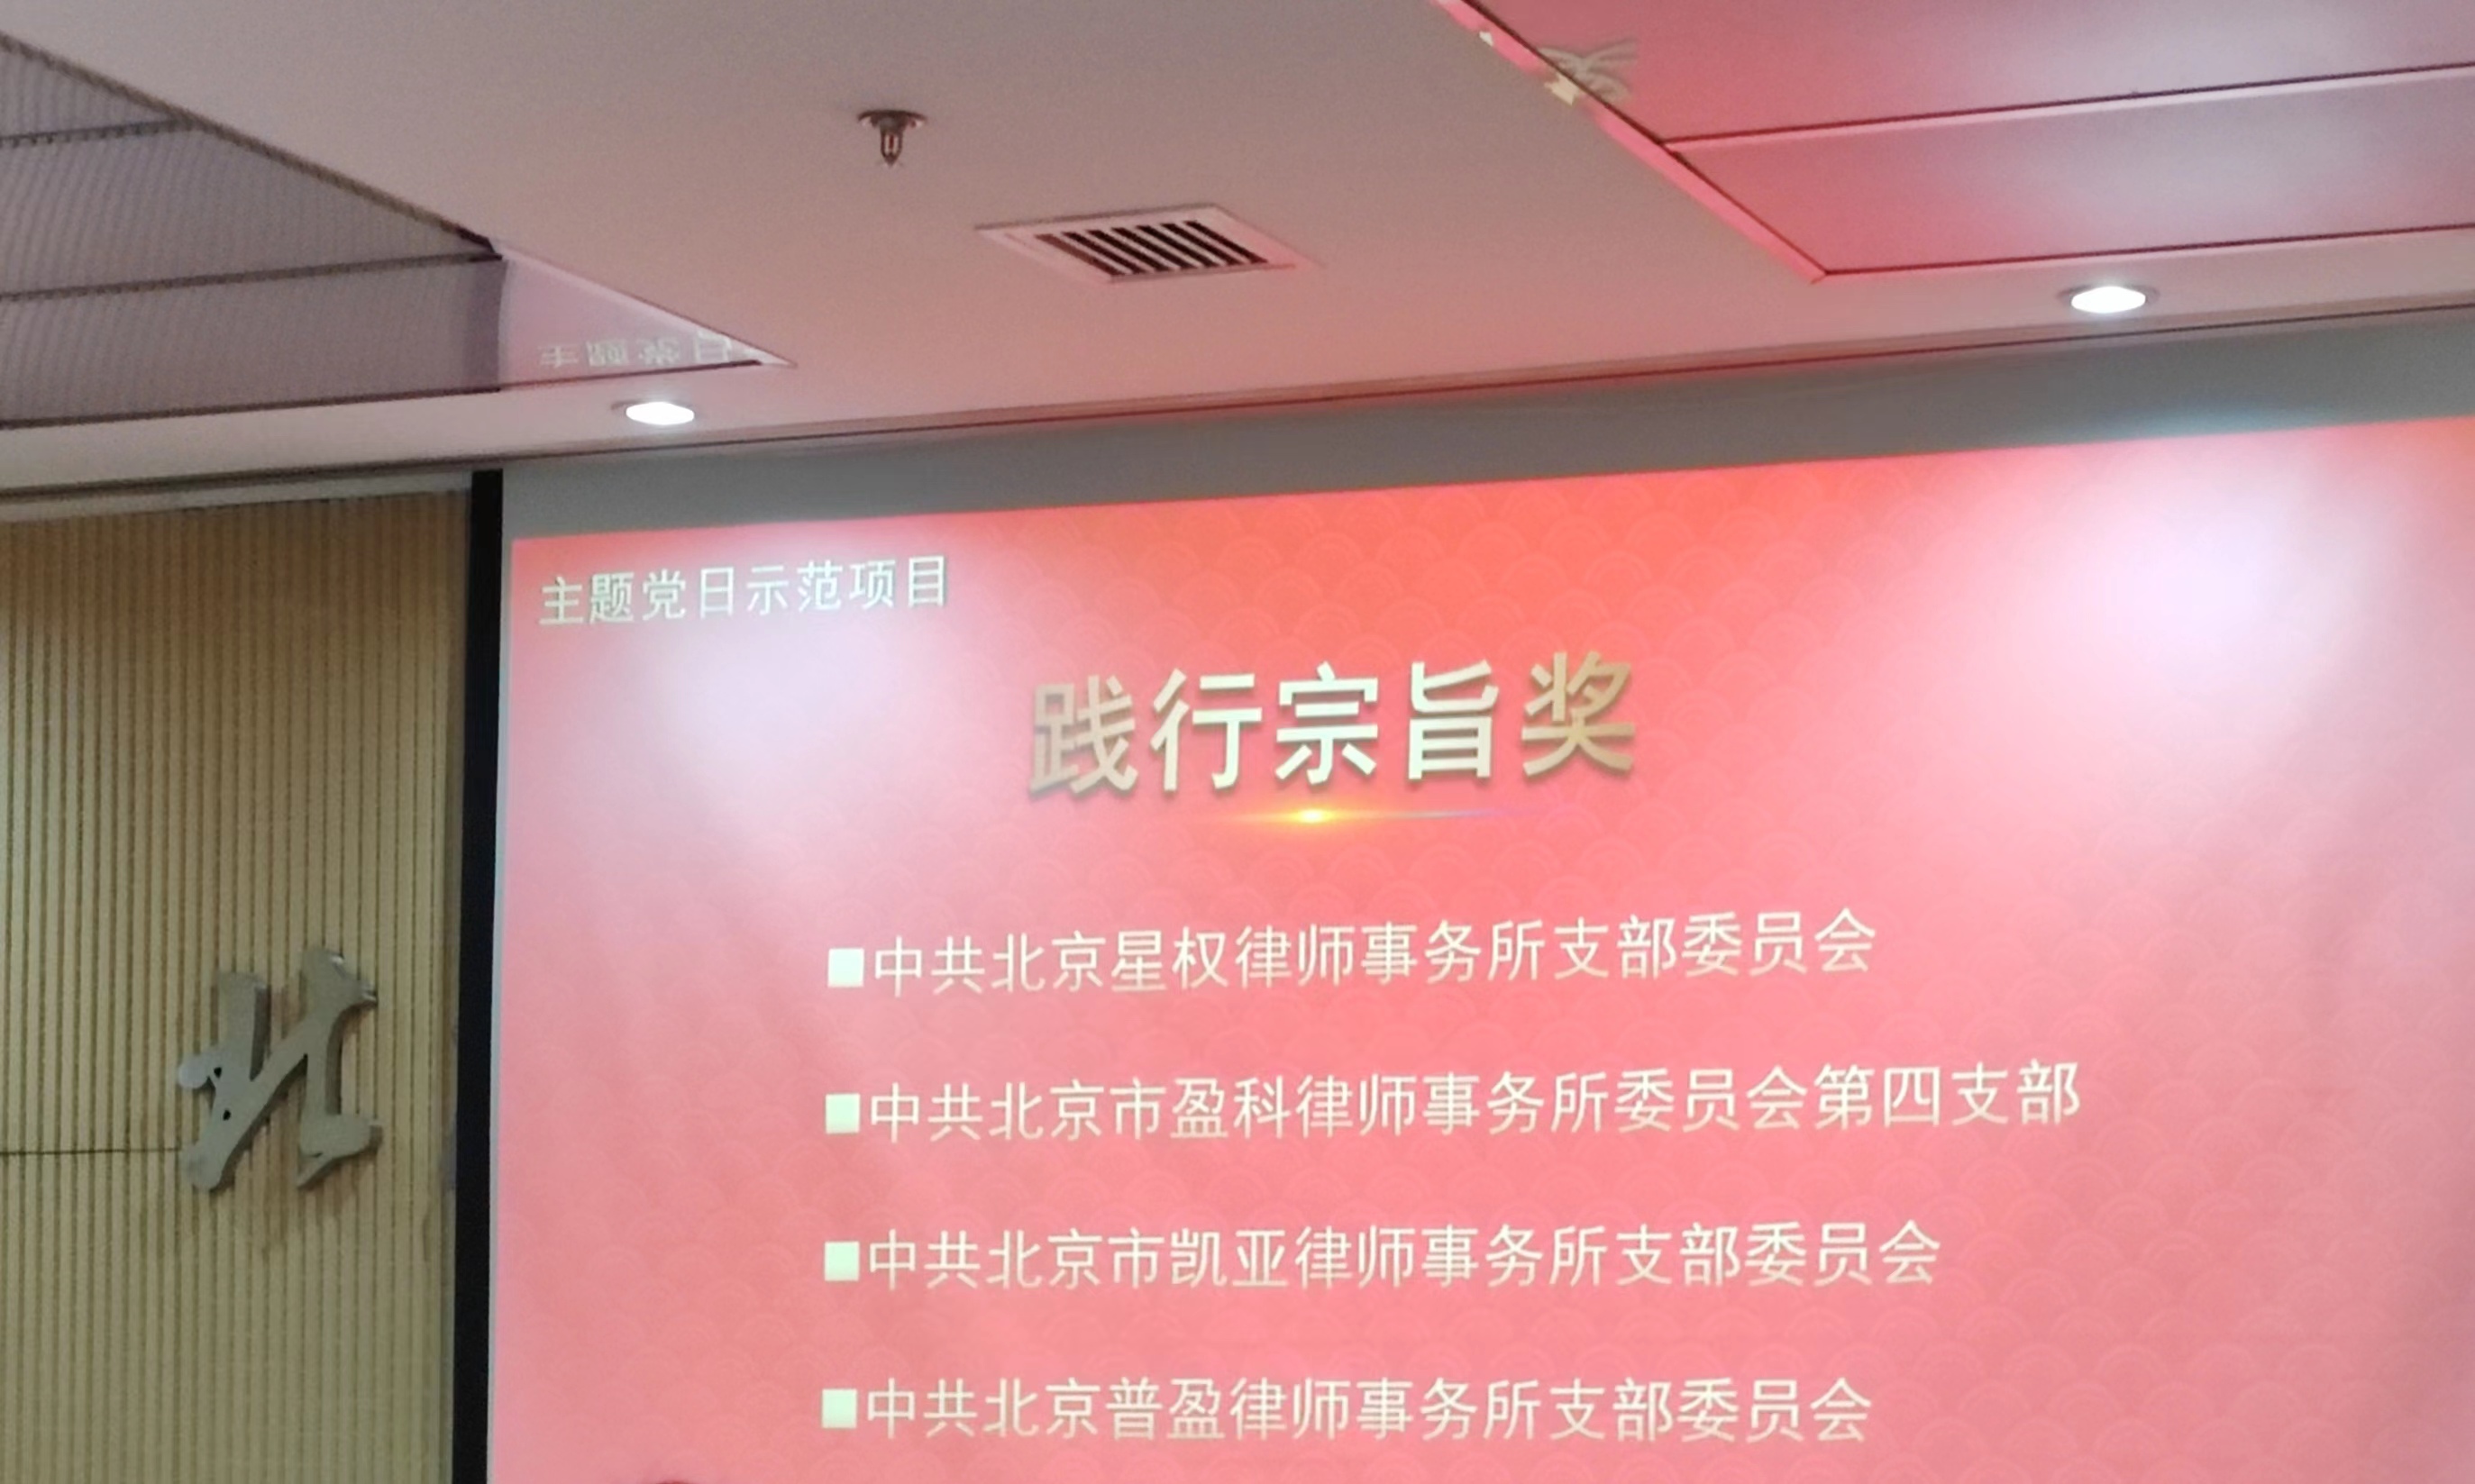 新闻|中共北京市凯亚律师事务所党支部获得党委表彰 践行宗旨奖